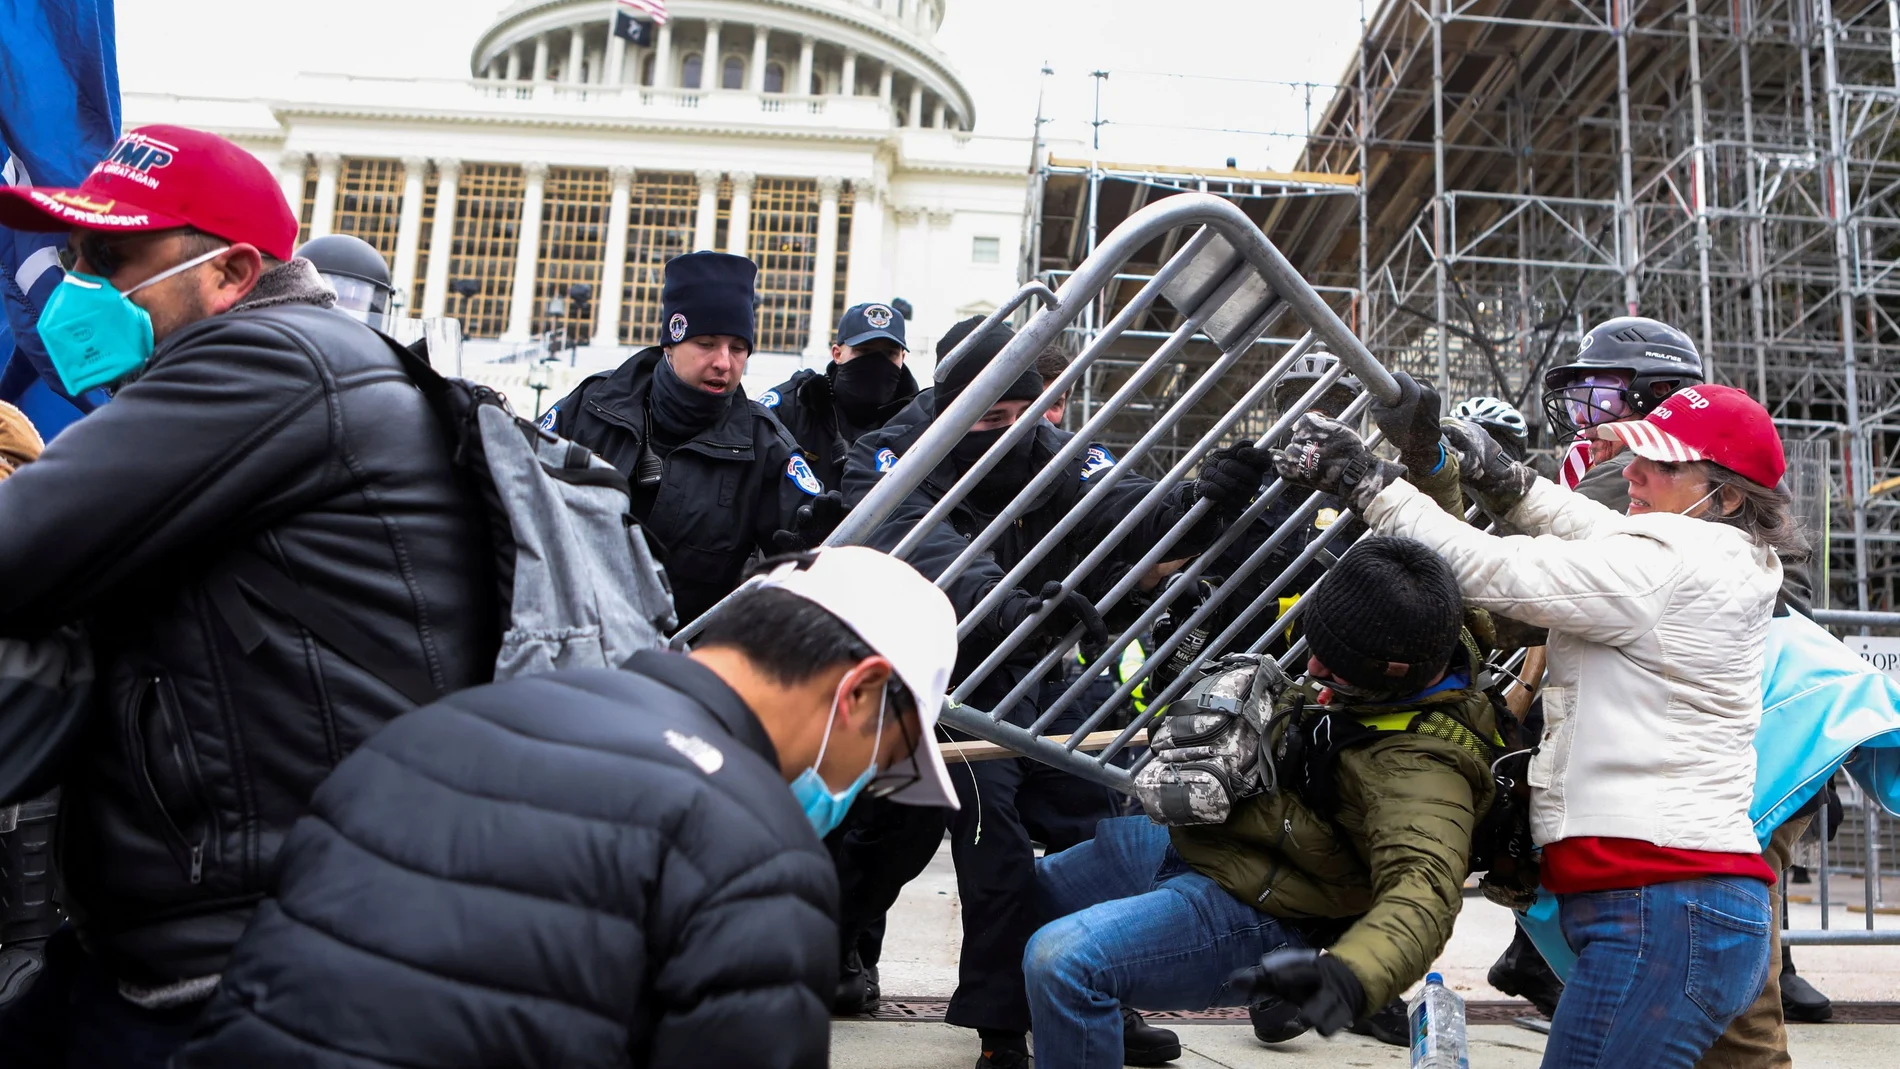 Miembros de seguridad impiden que los manifestantes entren en el Capitolio